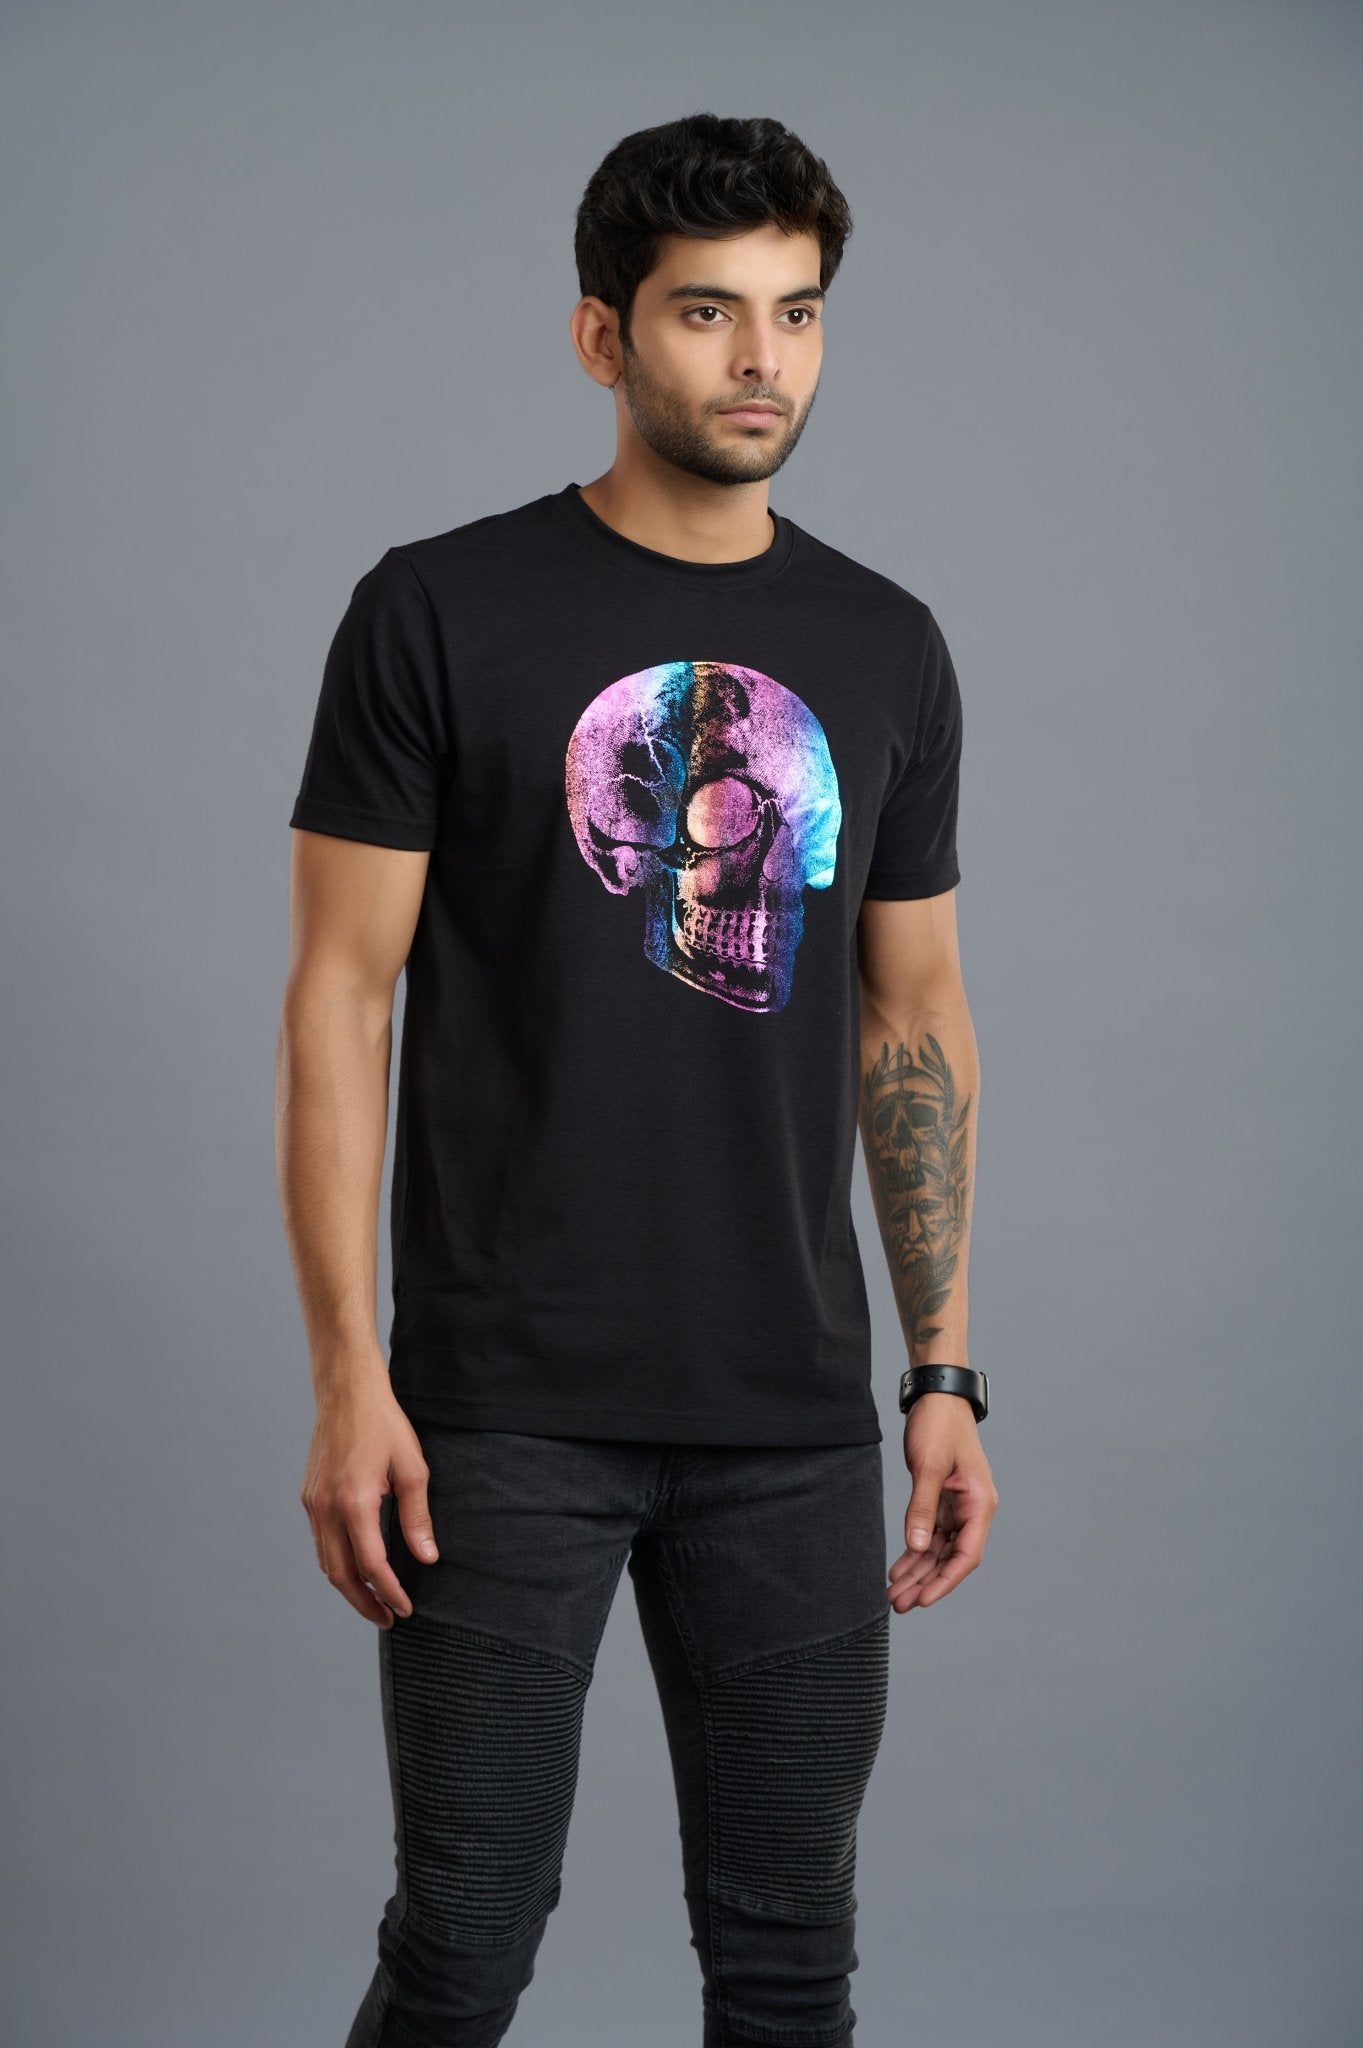 Multi-color Skull Printed T-Shirt for Men - Go Devil